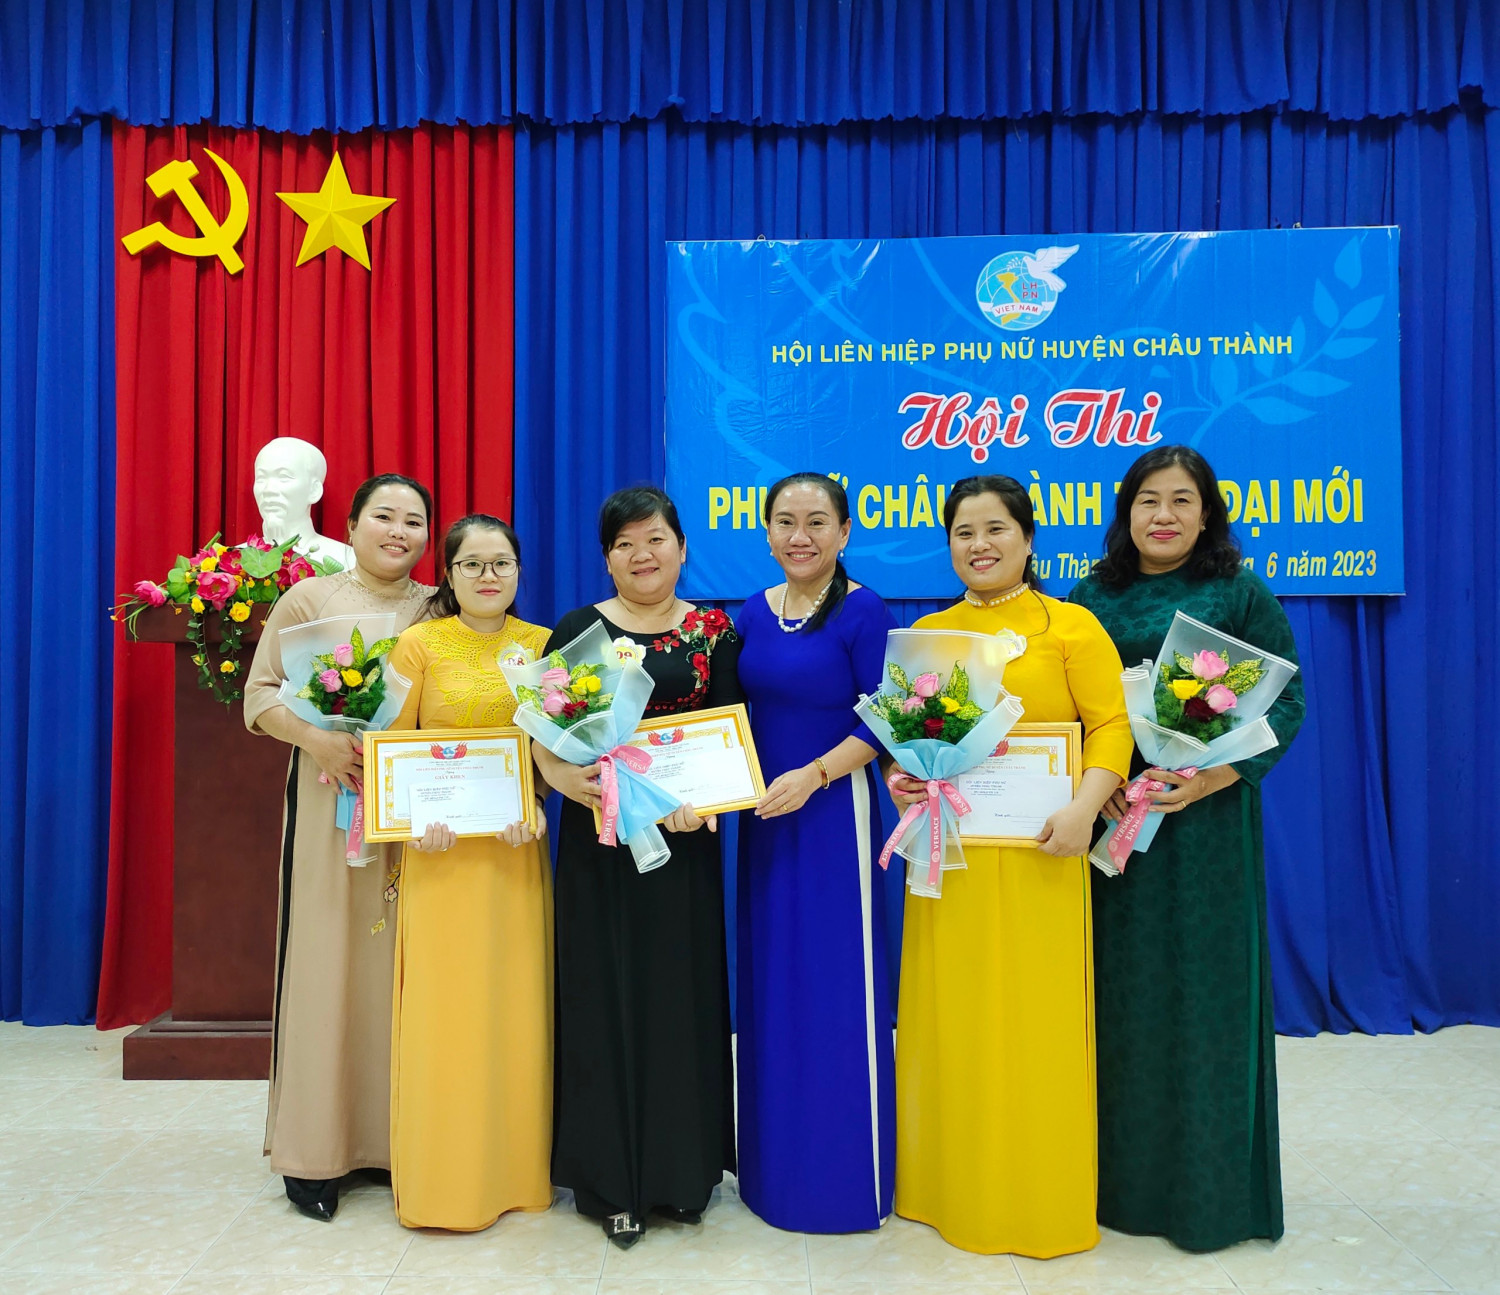 Hội LHPN huyện Châu Thành: Tổ chức Hội thi “Phụ nữ Châu Thành thời đại mới” năm 2023